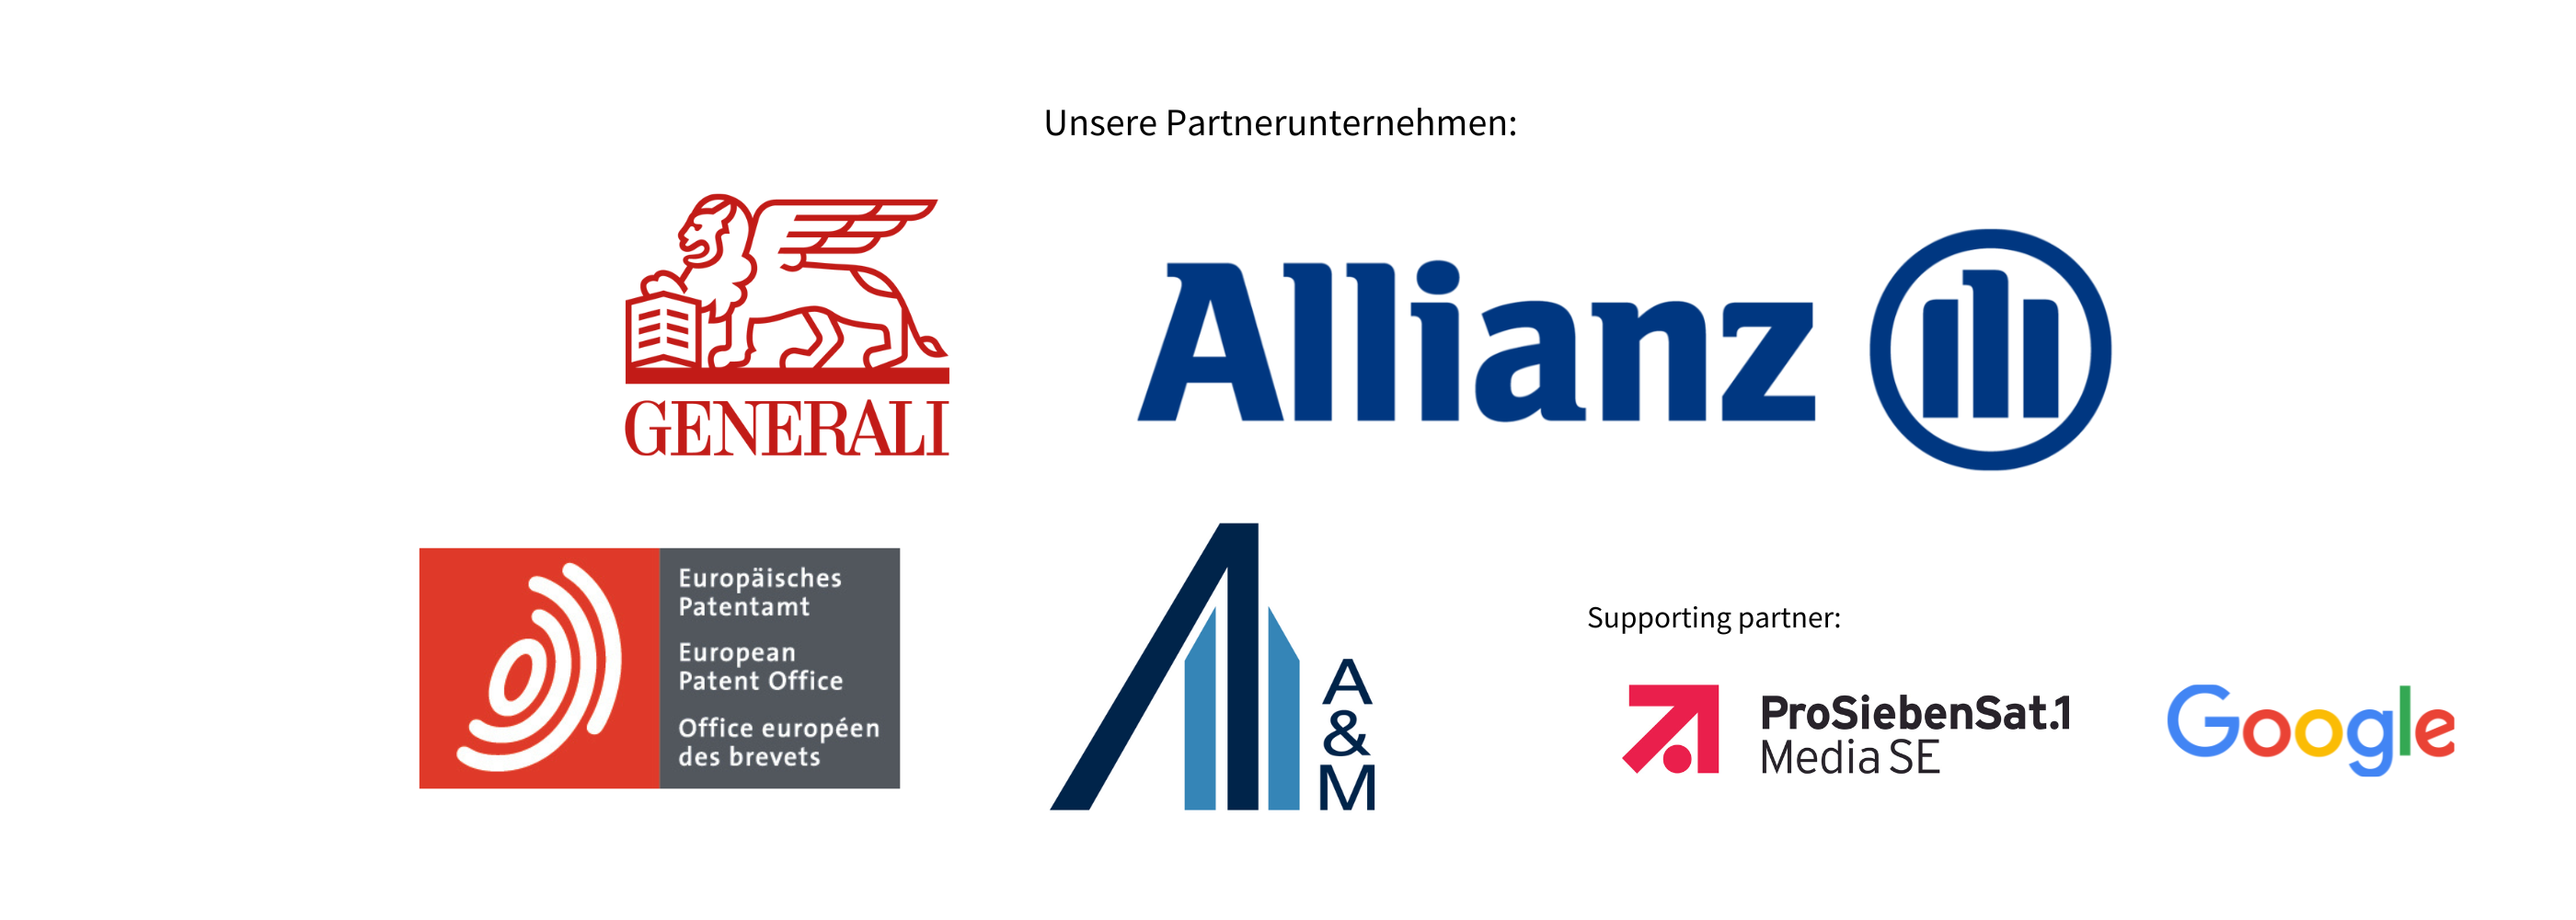 Unsere Partnerunternehmen Generali, Allianz, Alvare und Marsal, Europäisches Patentamt, Google und Pro7 als supporting partner